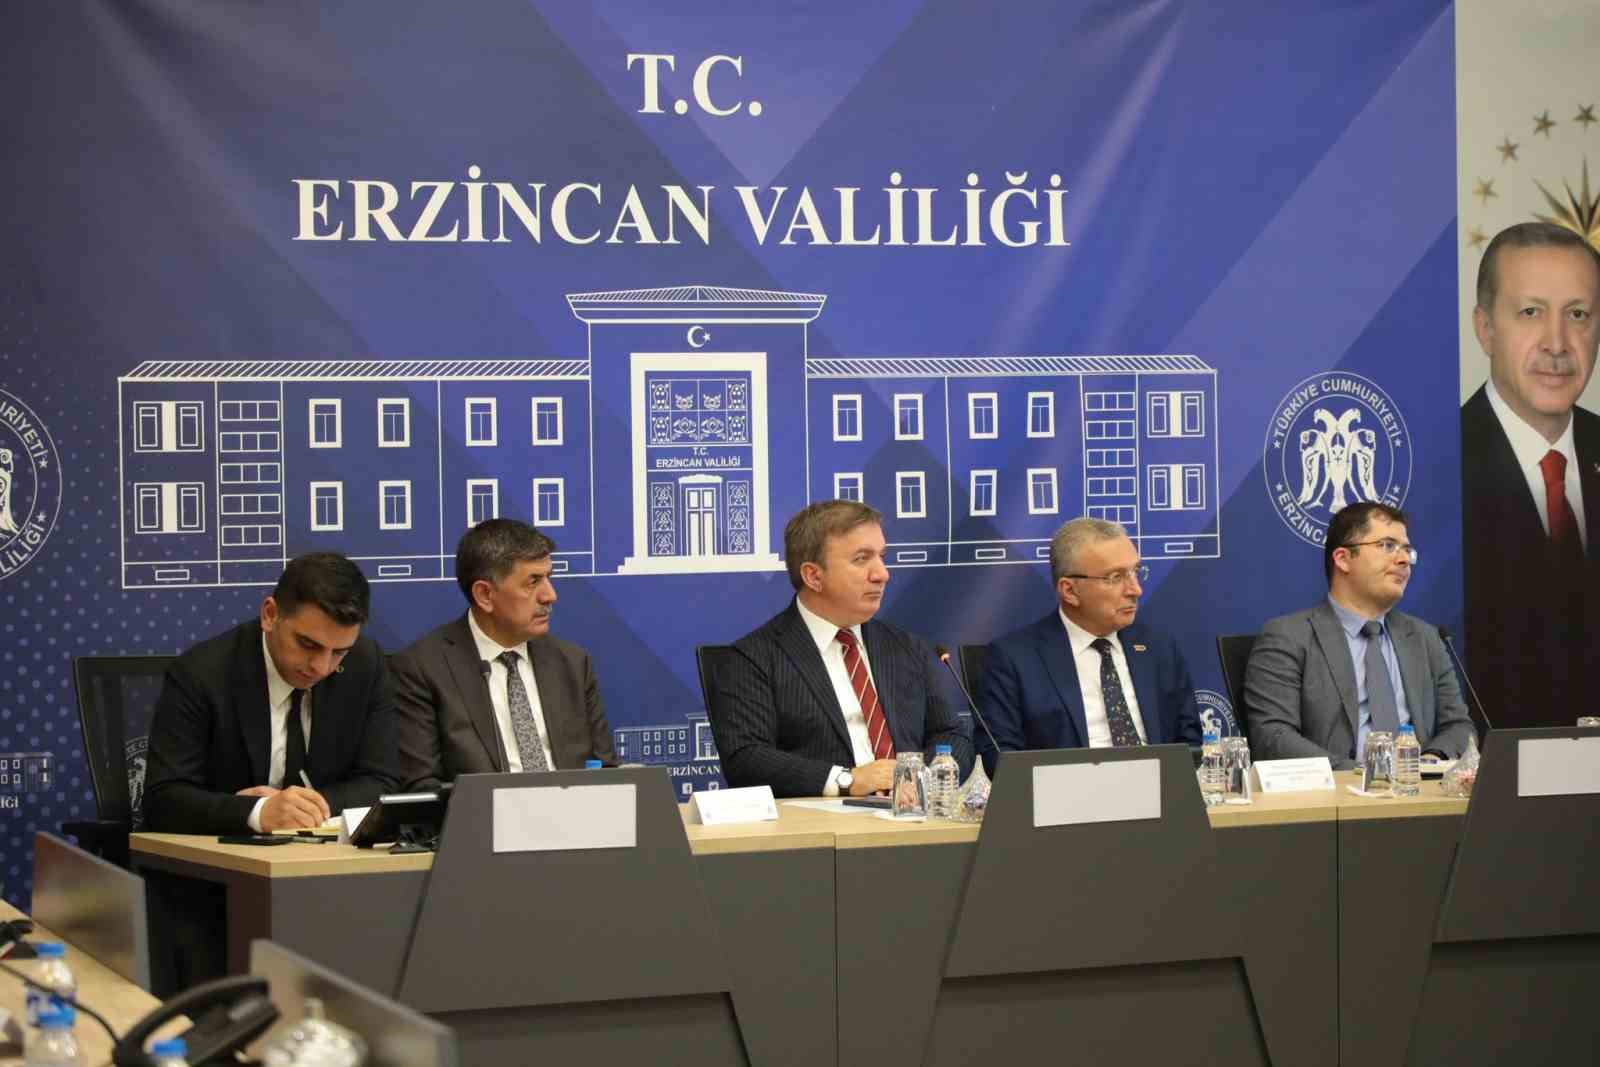 Erzincandaki Yatırımlar Değerlendirildi